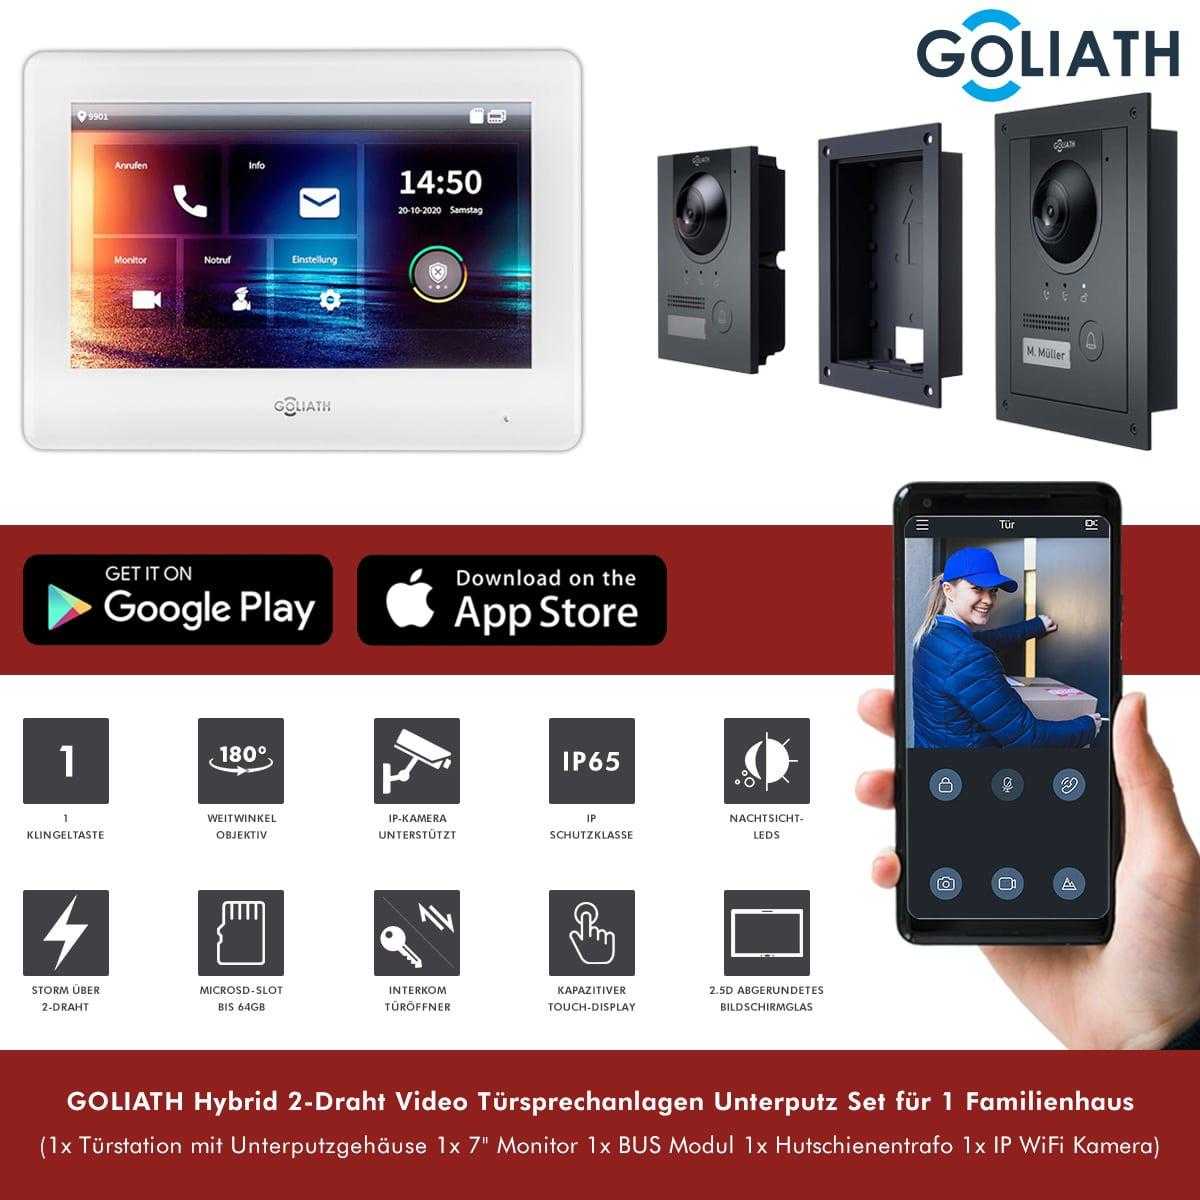 GOLIATH Hybrid 2-Draht Video Türsprechanlage Unterputz Set für 1 Familienhaus 1x 7 Monitor Weiß Anthrazit mit WiFi-Kamera von Goliath-Intercom